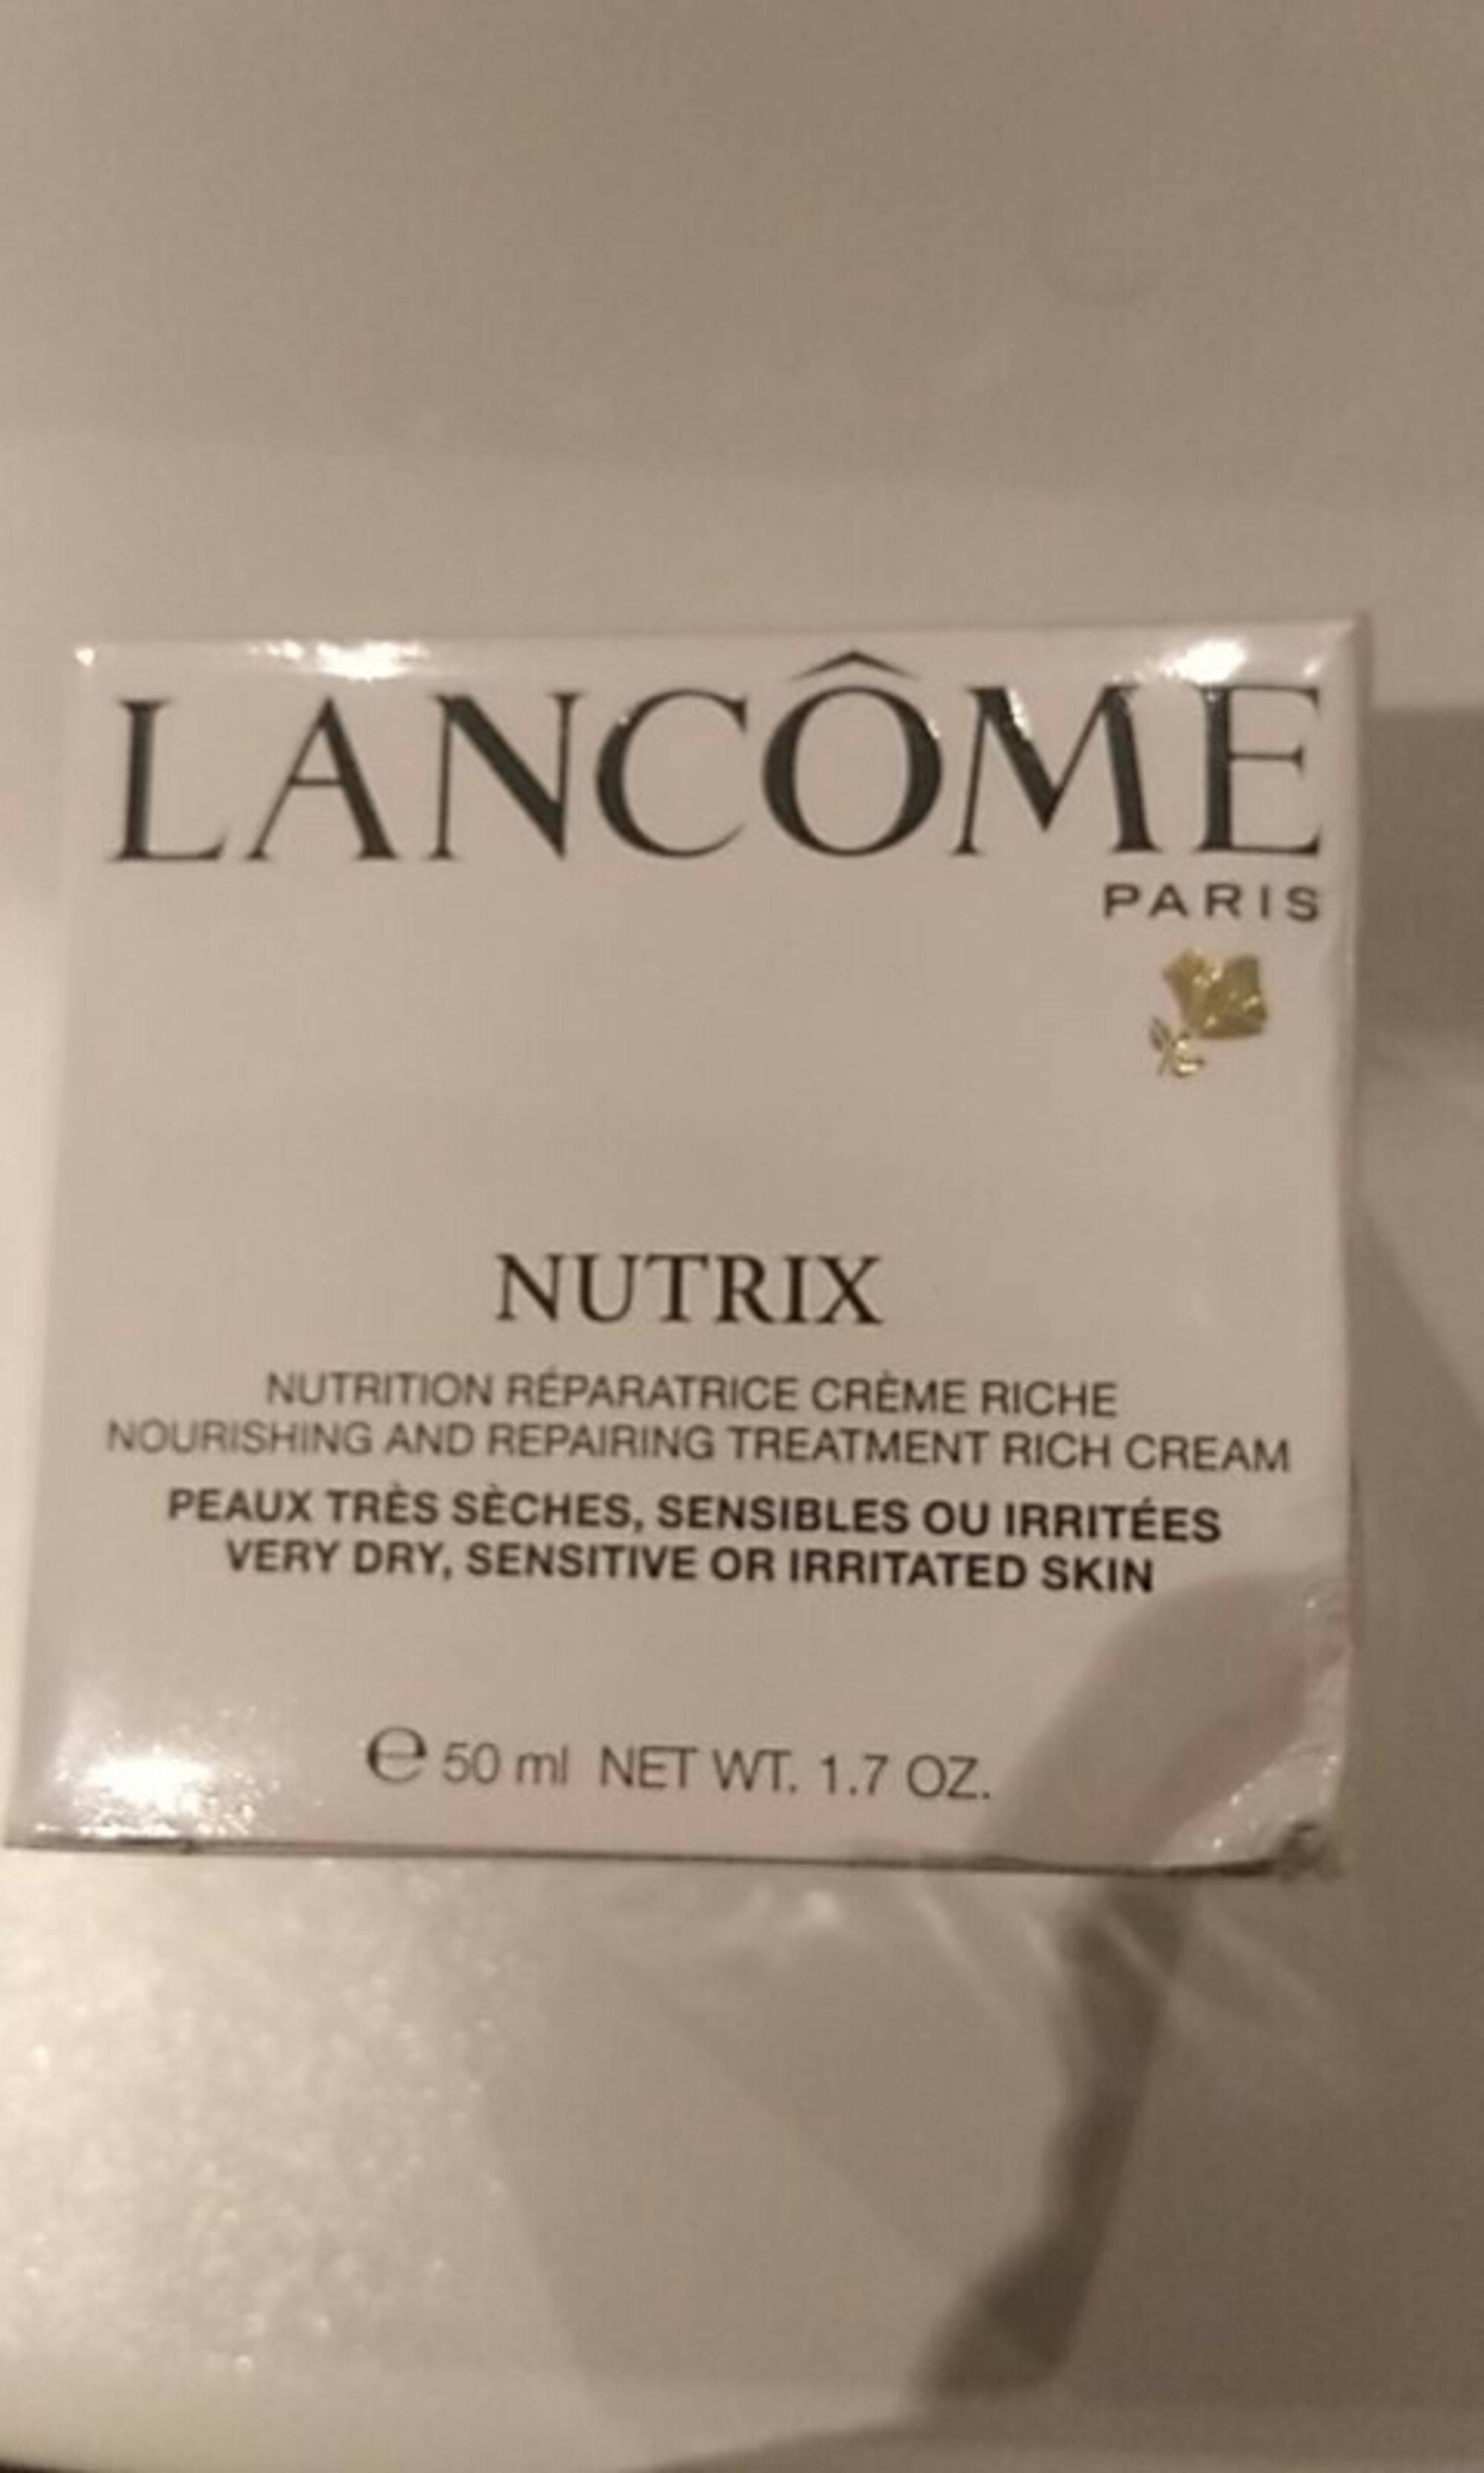 LANCÔME - Nutrix - Nutrition réparatrice crème riche